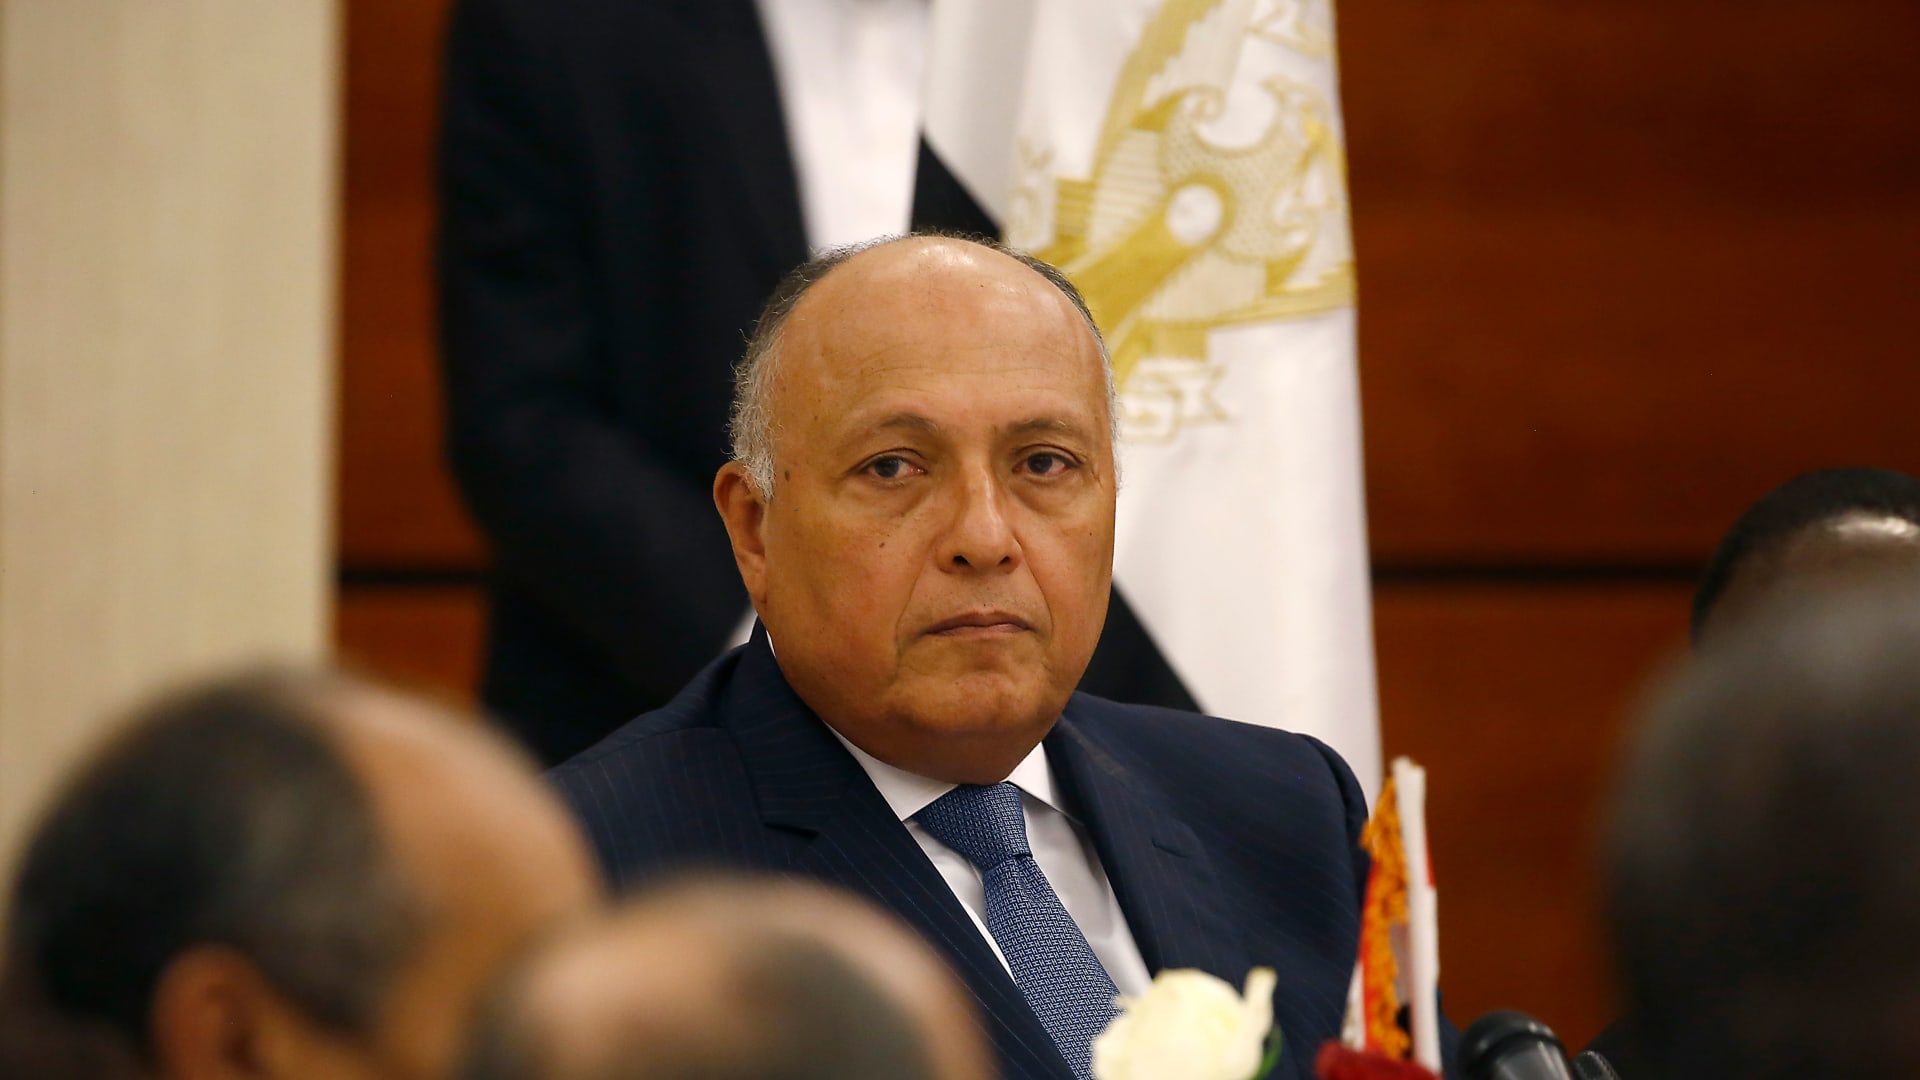 وزير الخارجية المصري في أولى تصريحاته لـ"الجزيرة": مصر وقطر لديهما إرادة  لطي صفحة الماضي - CNN Arabic